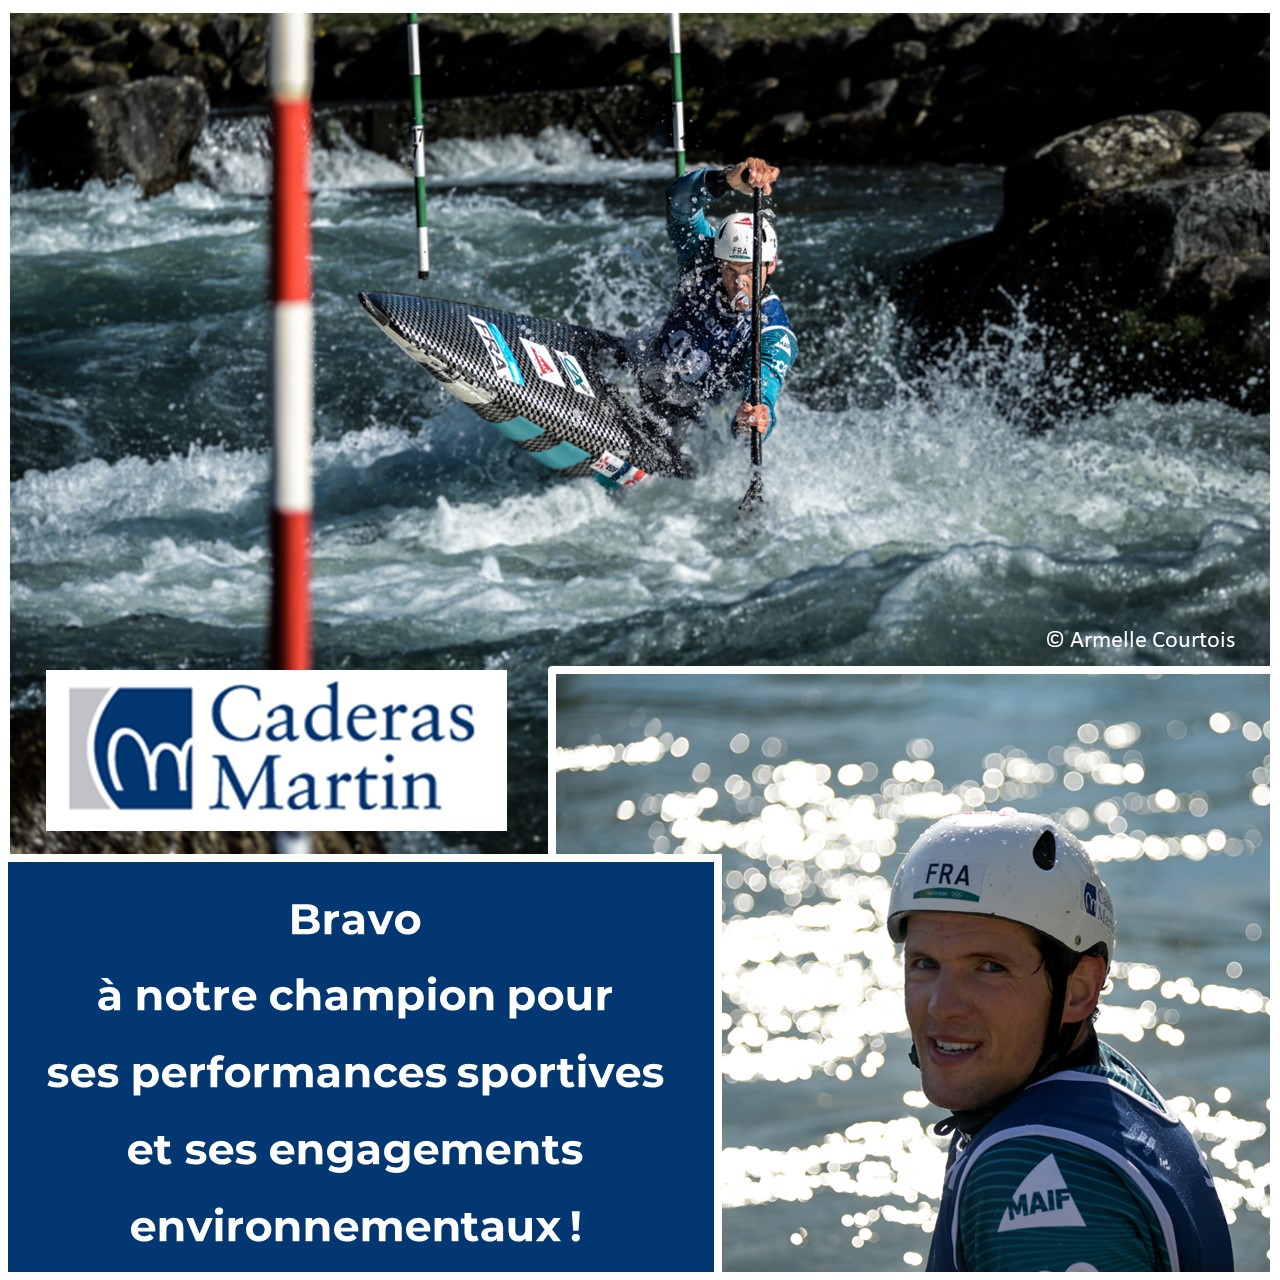 Vainqueur de la coupe de France de canoé slalom, Martin Thomas s’engage aussi pour le climat. Bravo à notre athlète ! Caderas Martin